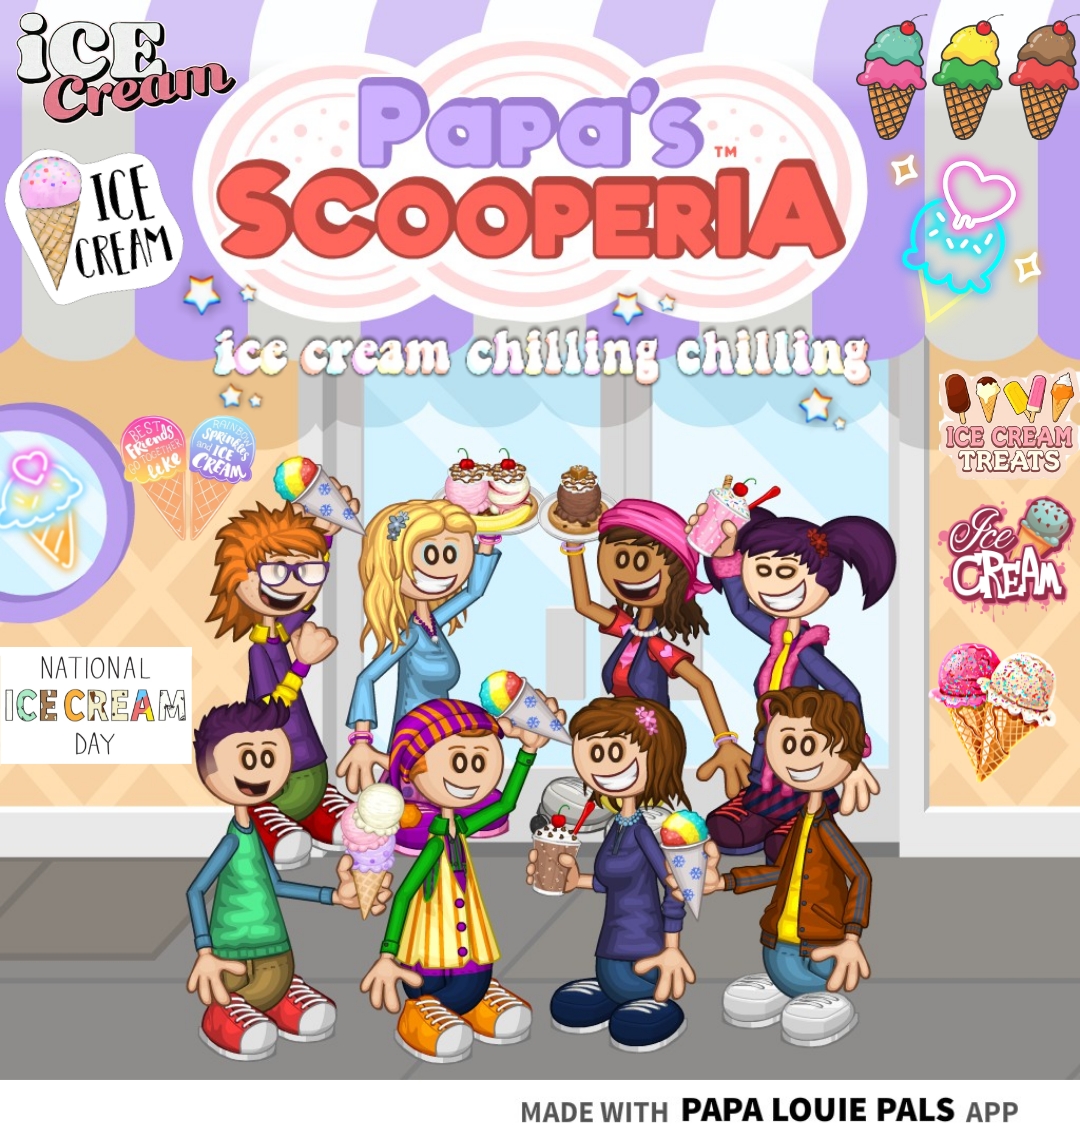 play papas scooperia day 39 w me ‼️ #papasscooperia